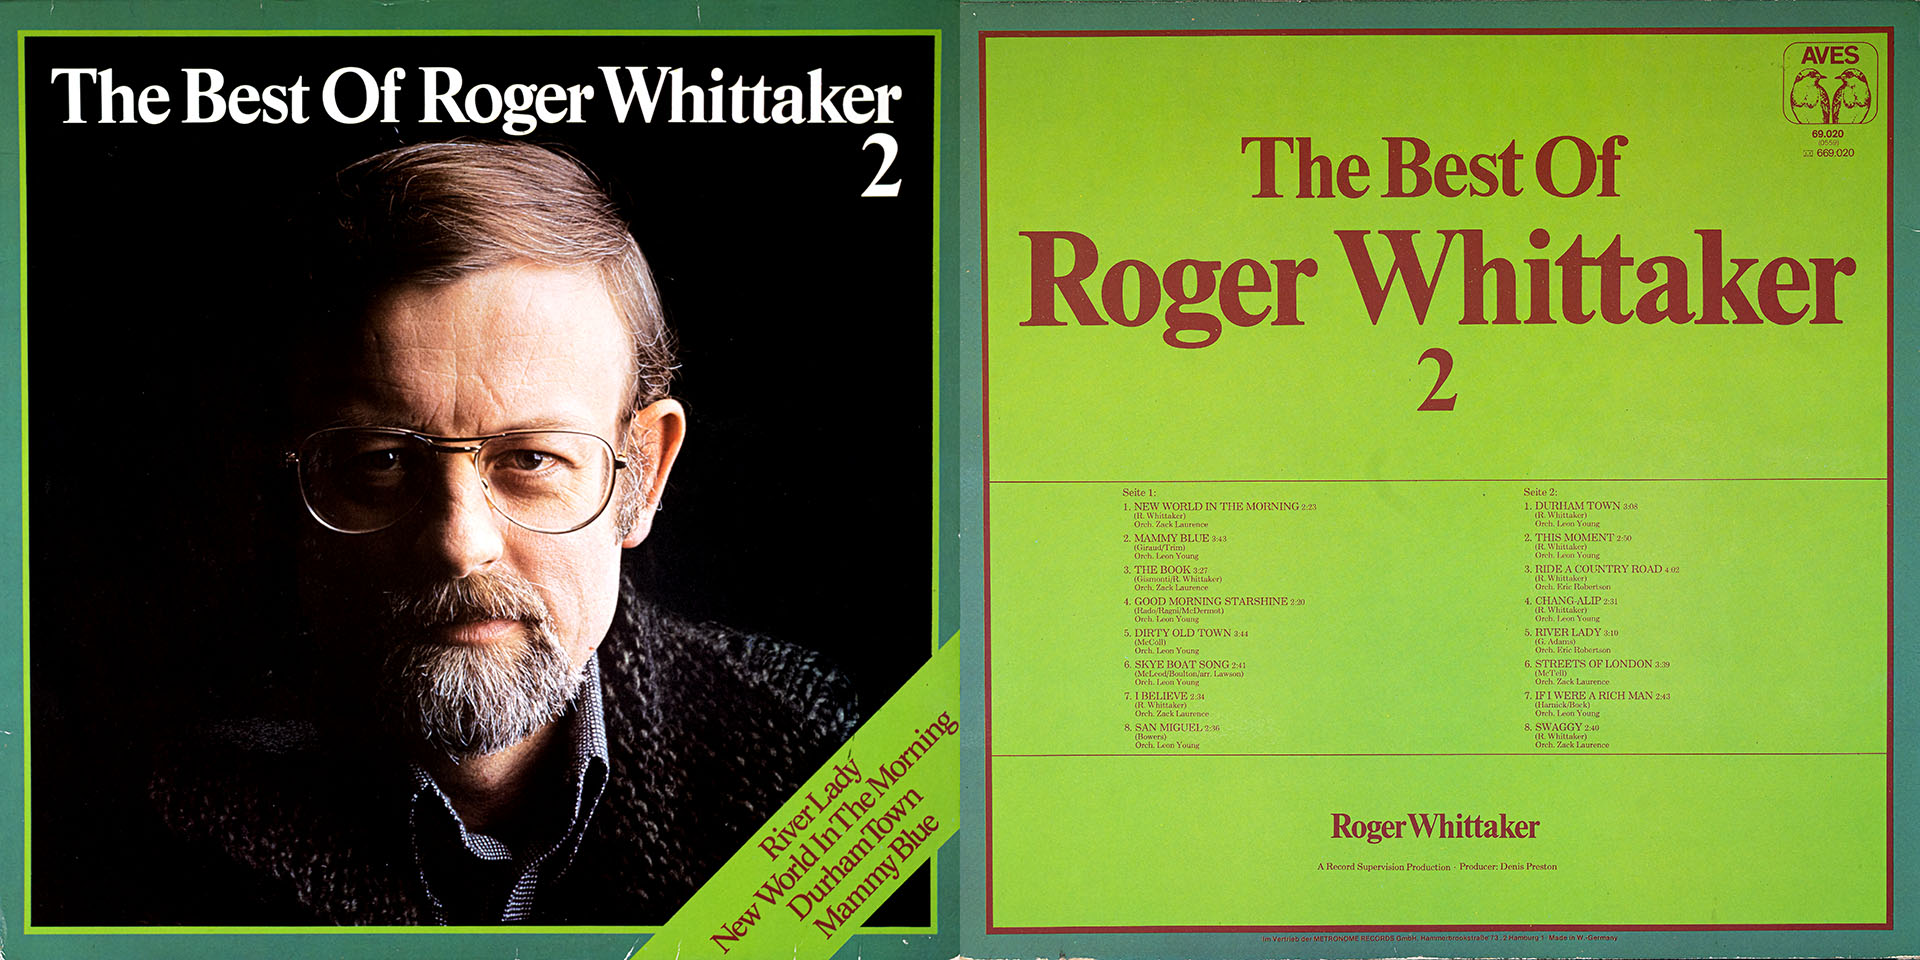 The Best Of Roger Whittaker 2 - Roger Whittaker